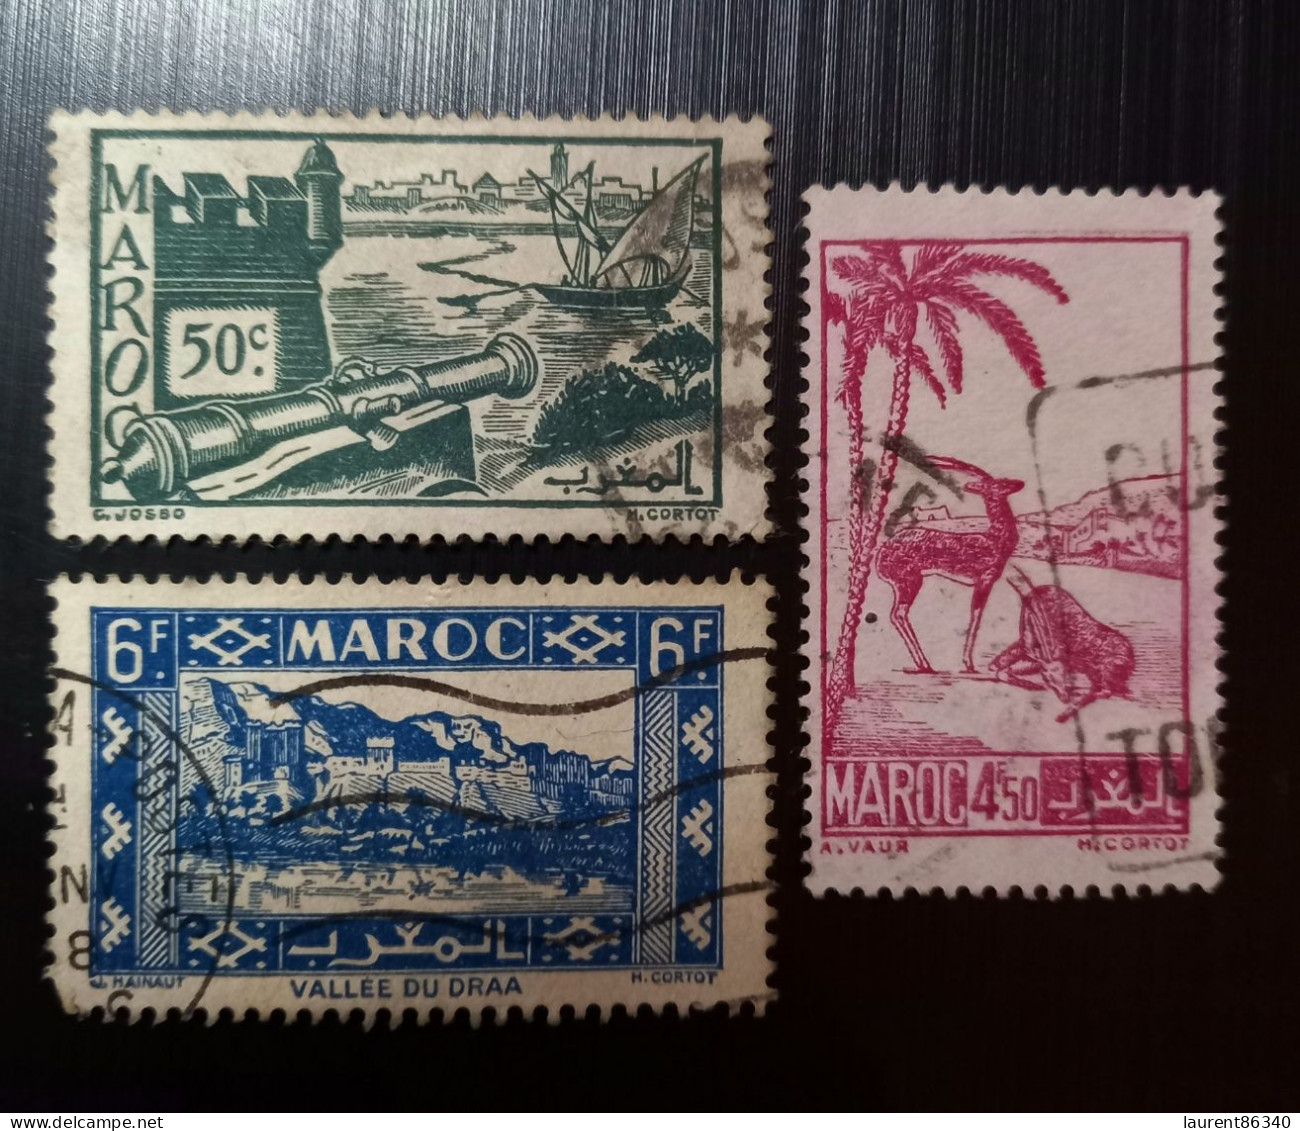 Maroc Poste Française 1945 Local Motives  Modèle: Cortot Gravure: C. Josso - Used Stamps